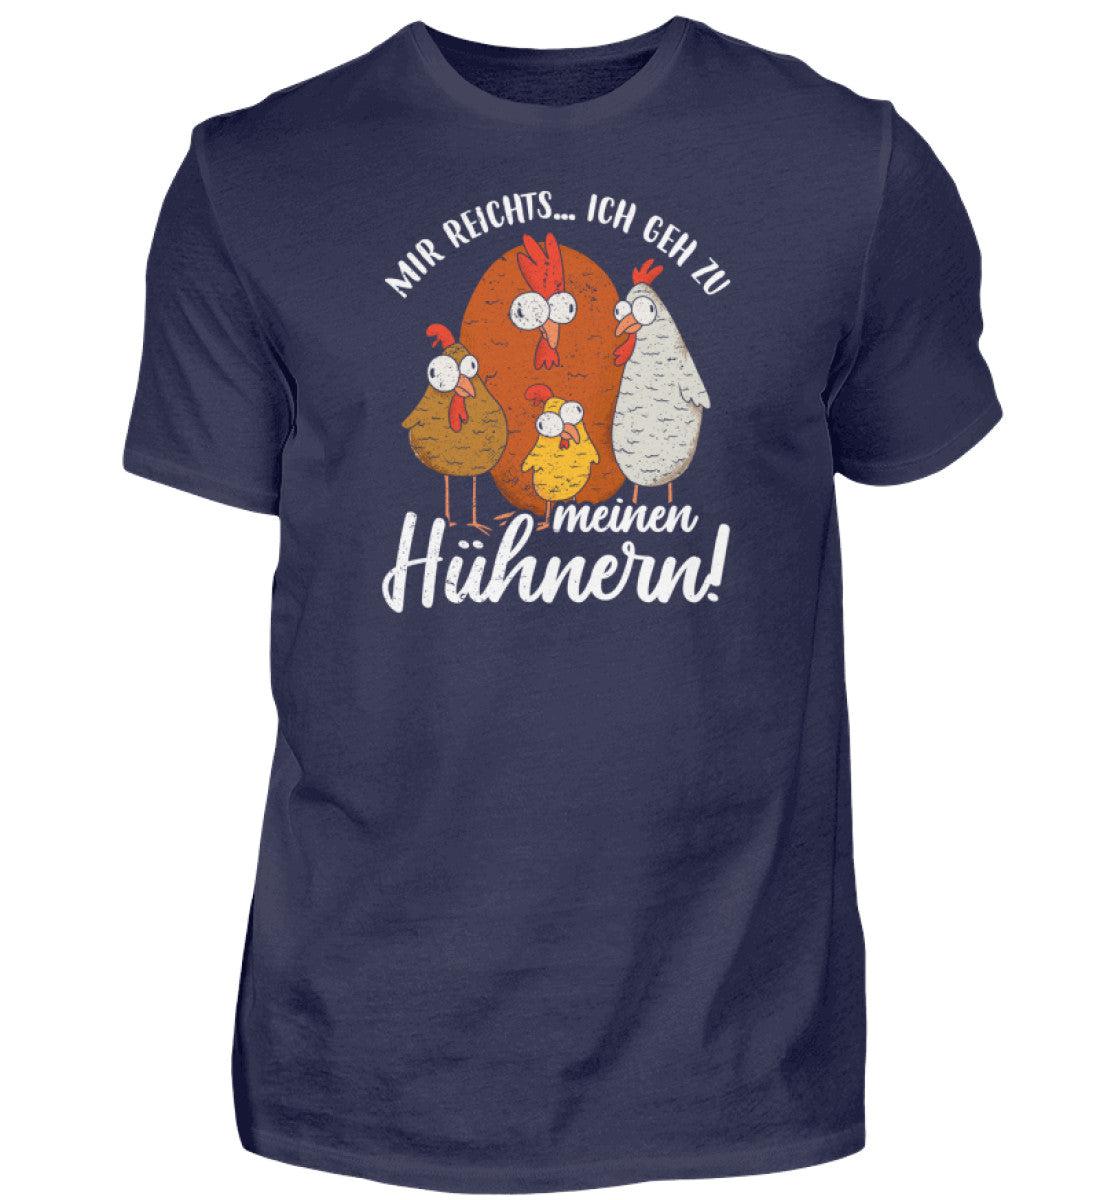 Mir reichts ich geh zu meinen Hühnern · Herren T-Shirt-Herren Basic T-Shirt-Navy-S-Agrarstarz